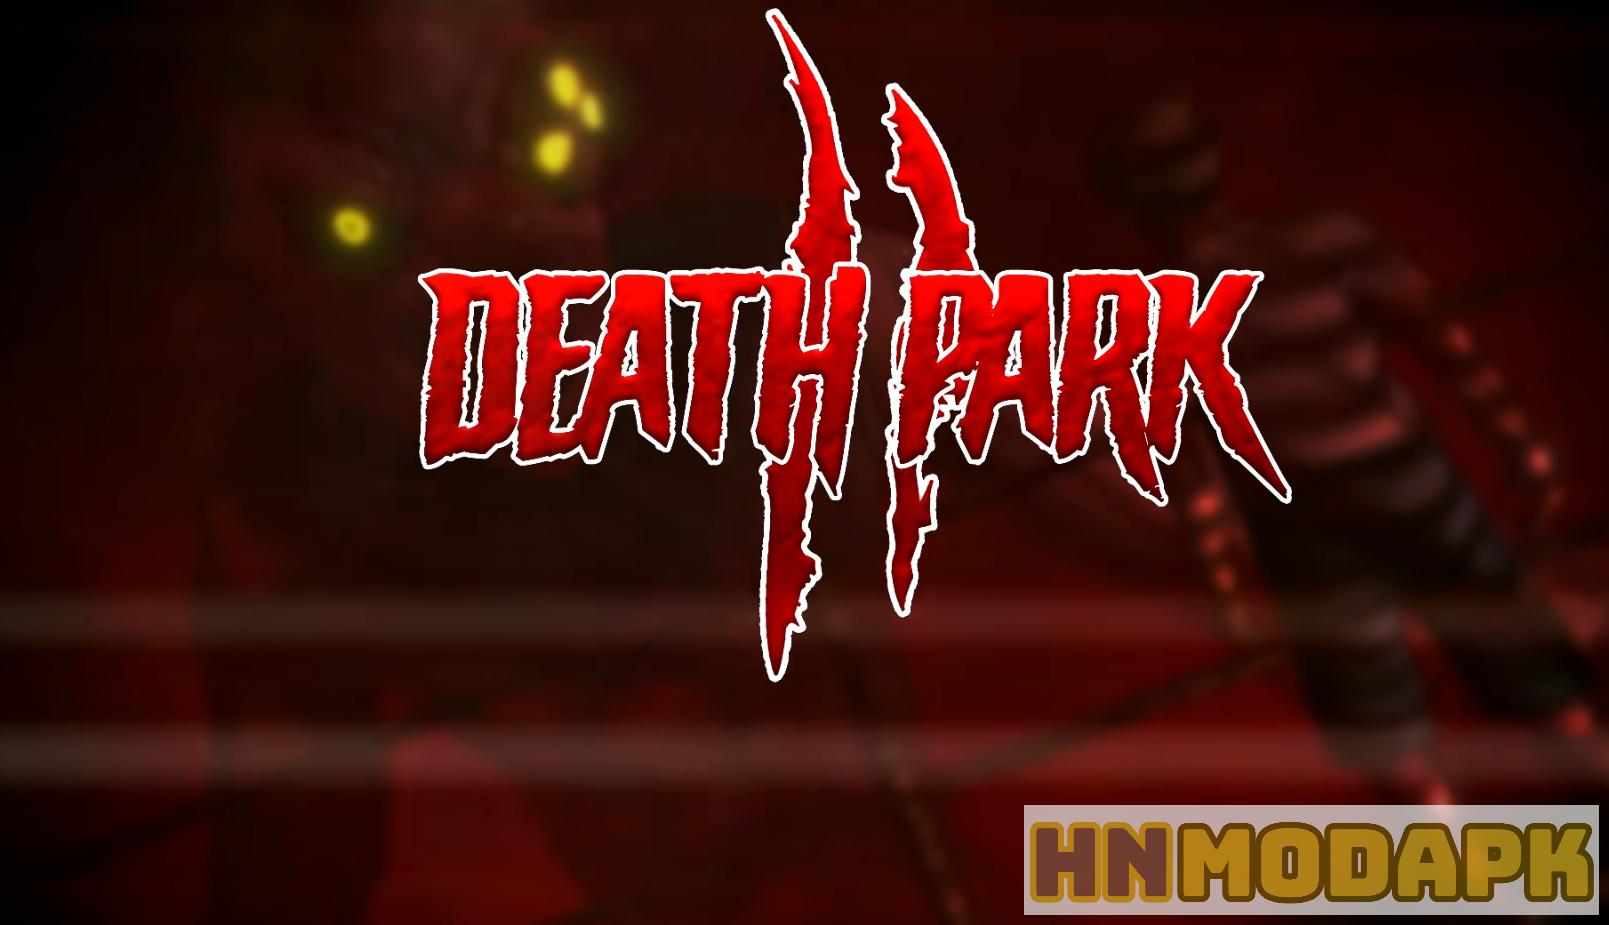 Hack Death Park 2 MOD (Menu Pro, Tiền Full, Đạn Max, Tất Cả Cấp Độ, Giao Dịch) APK 1.5.2